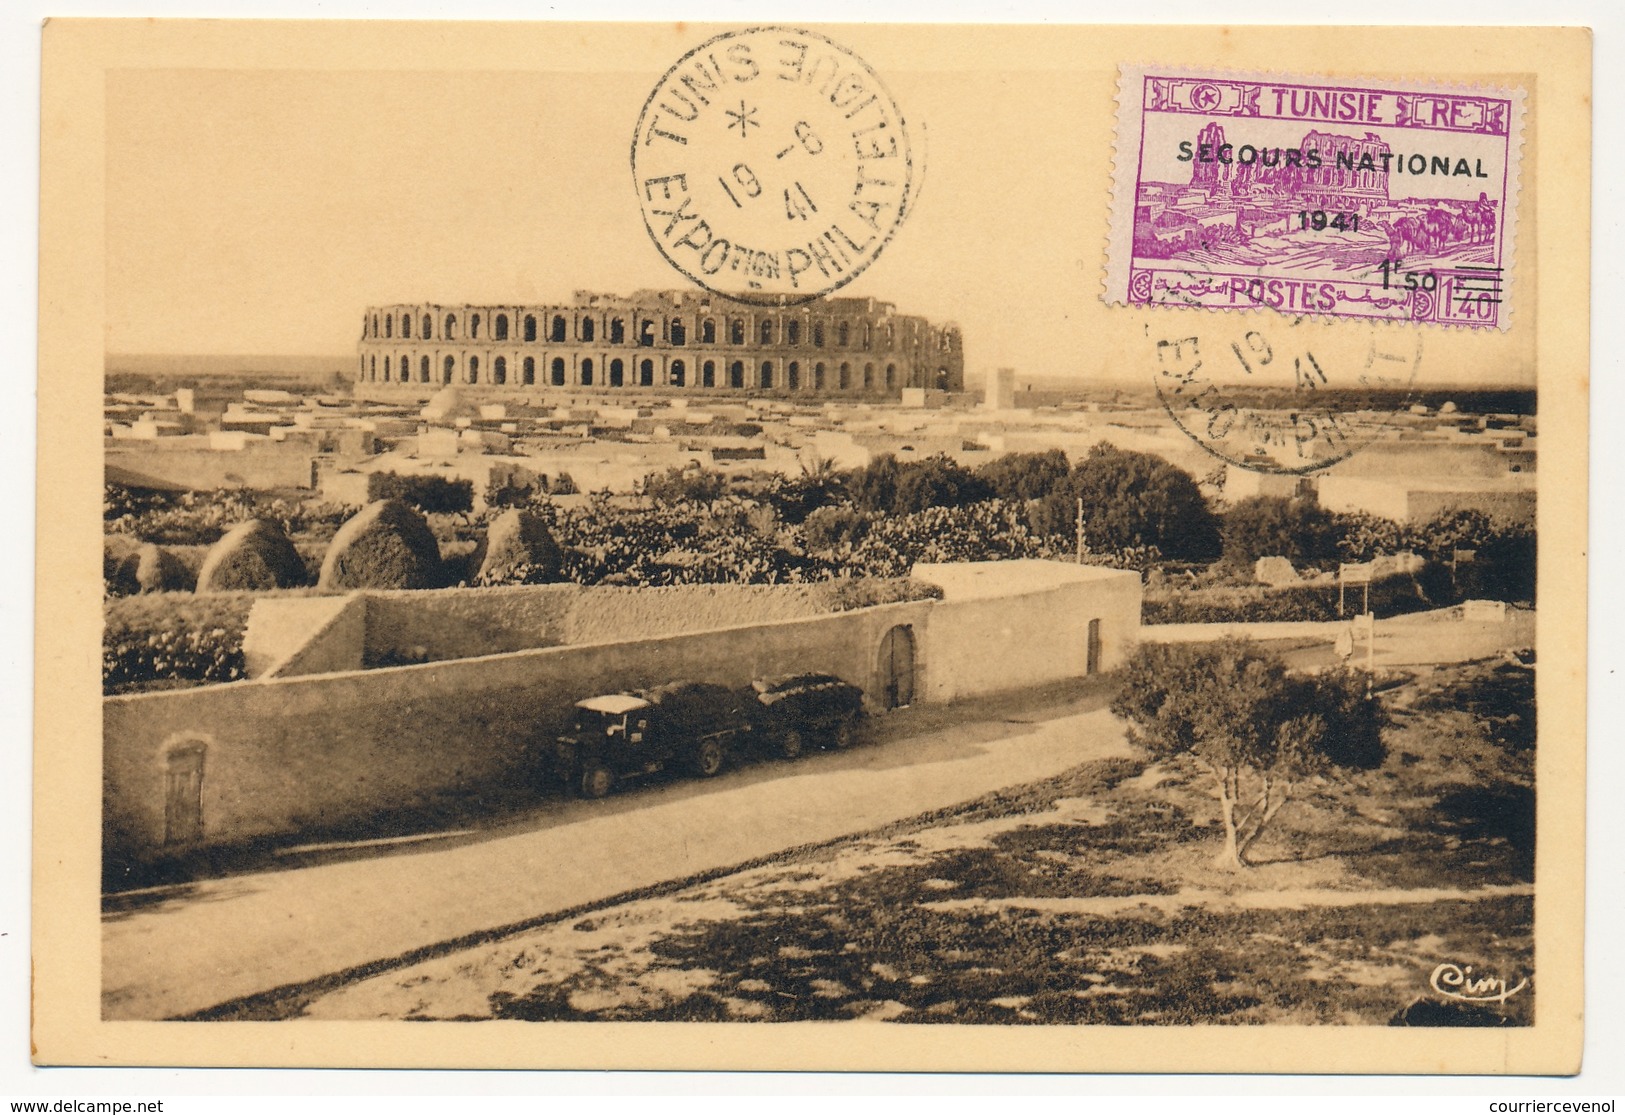 TUNISIE - 4 Cartes Maximum - Série Secours National 1941 - Exposition Philatélique De Tunis 1941 - Lettres & Documents